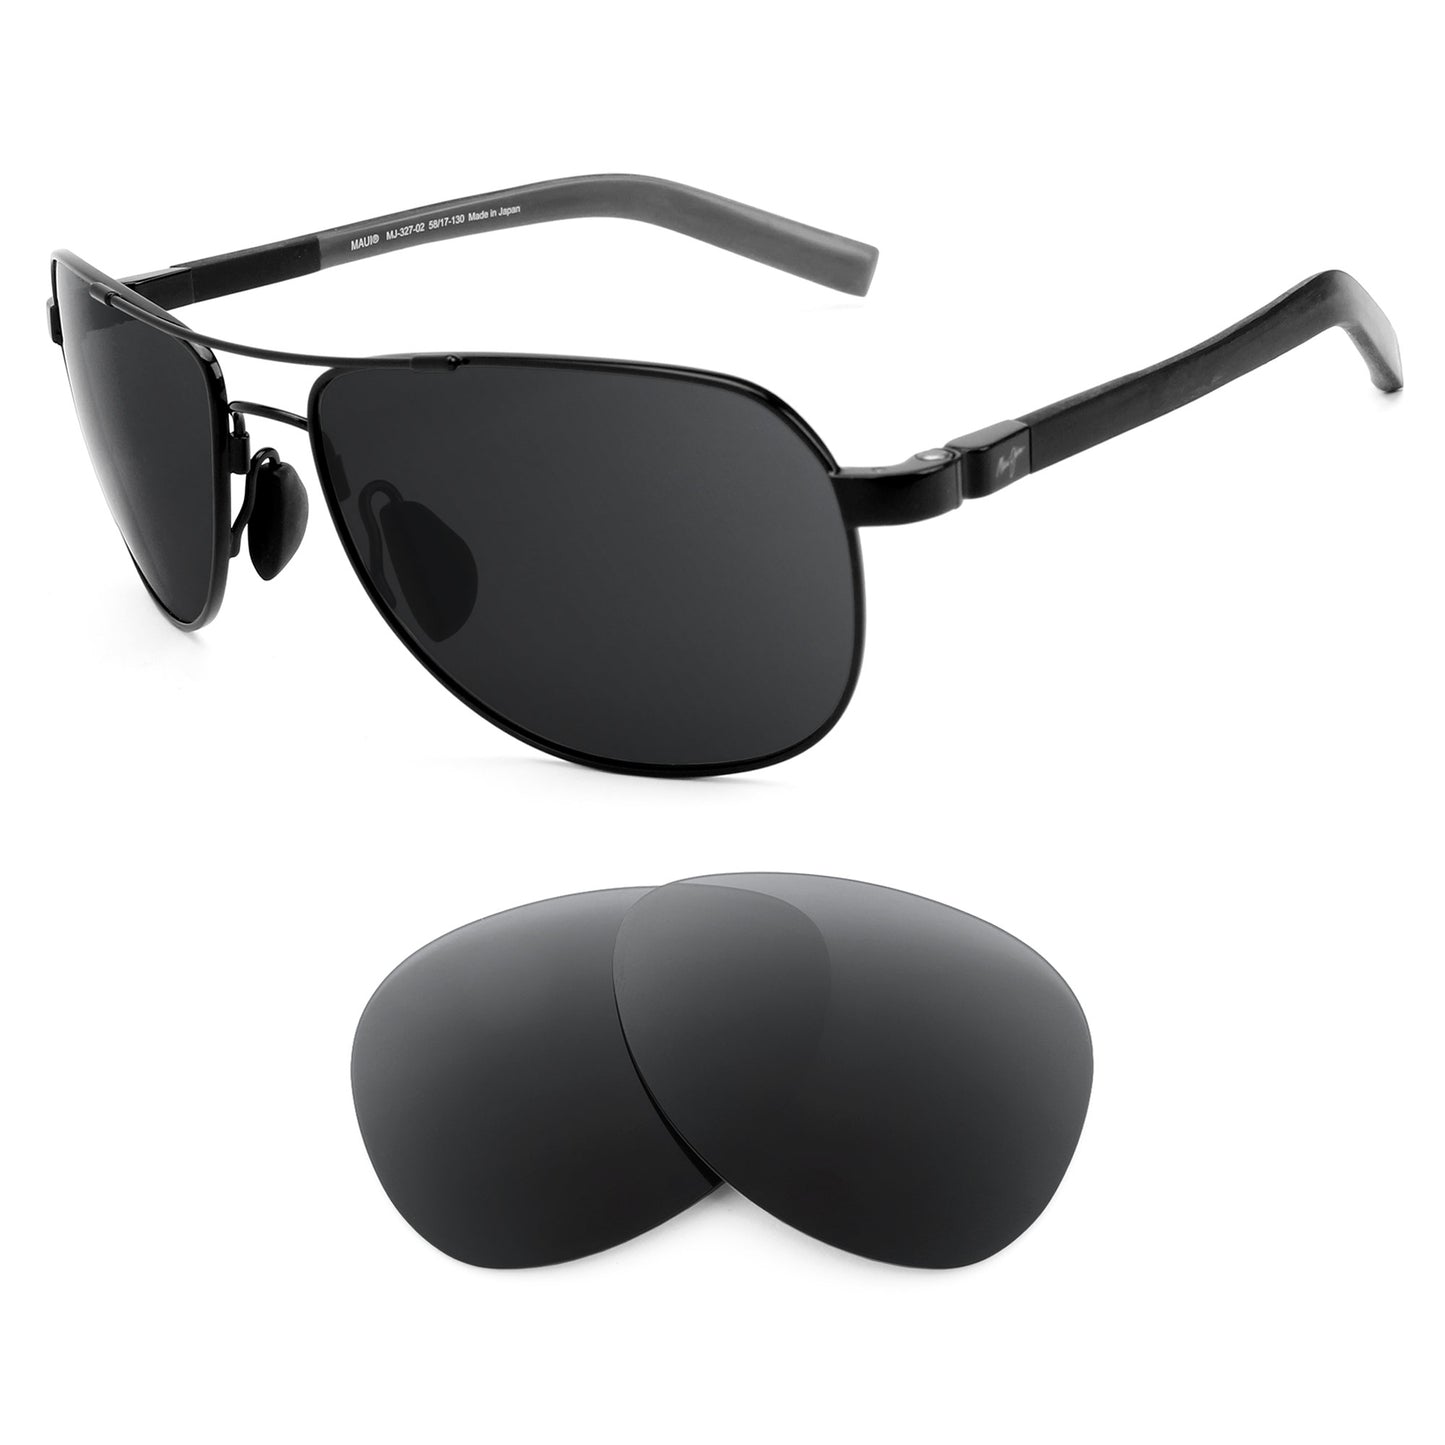 Maui Jim Guardrails MJ327 sunglasses with replacement lenses